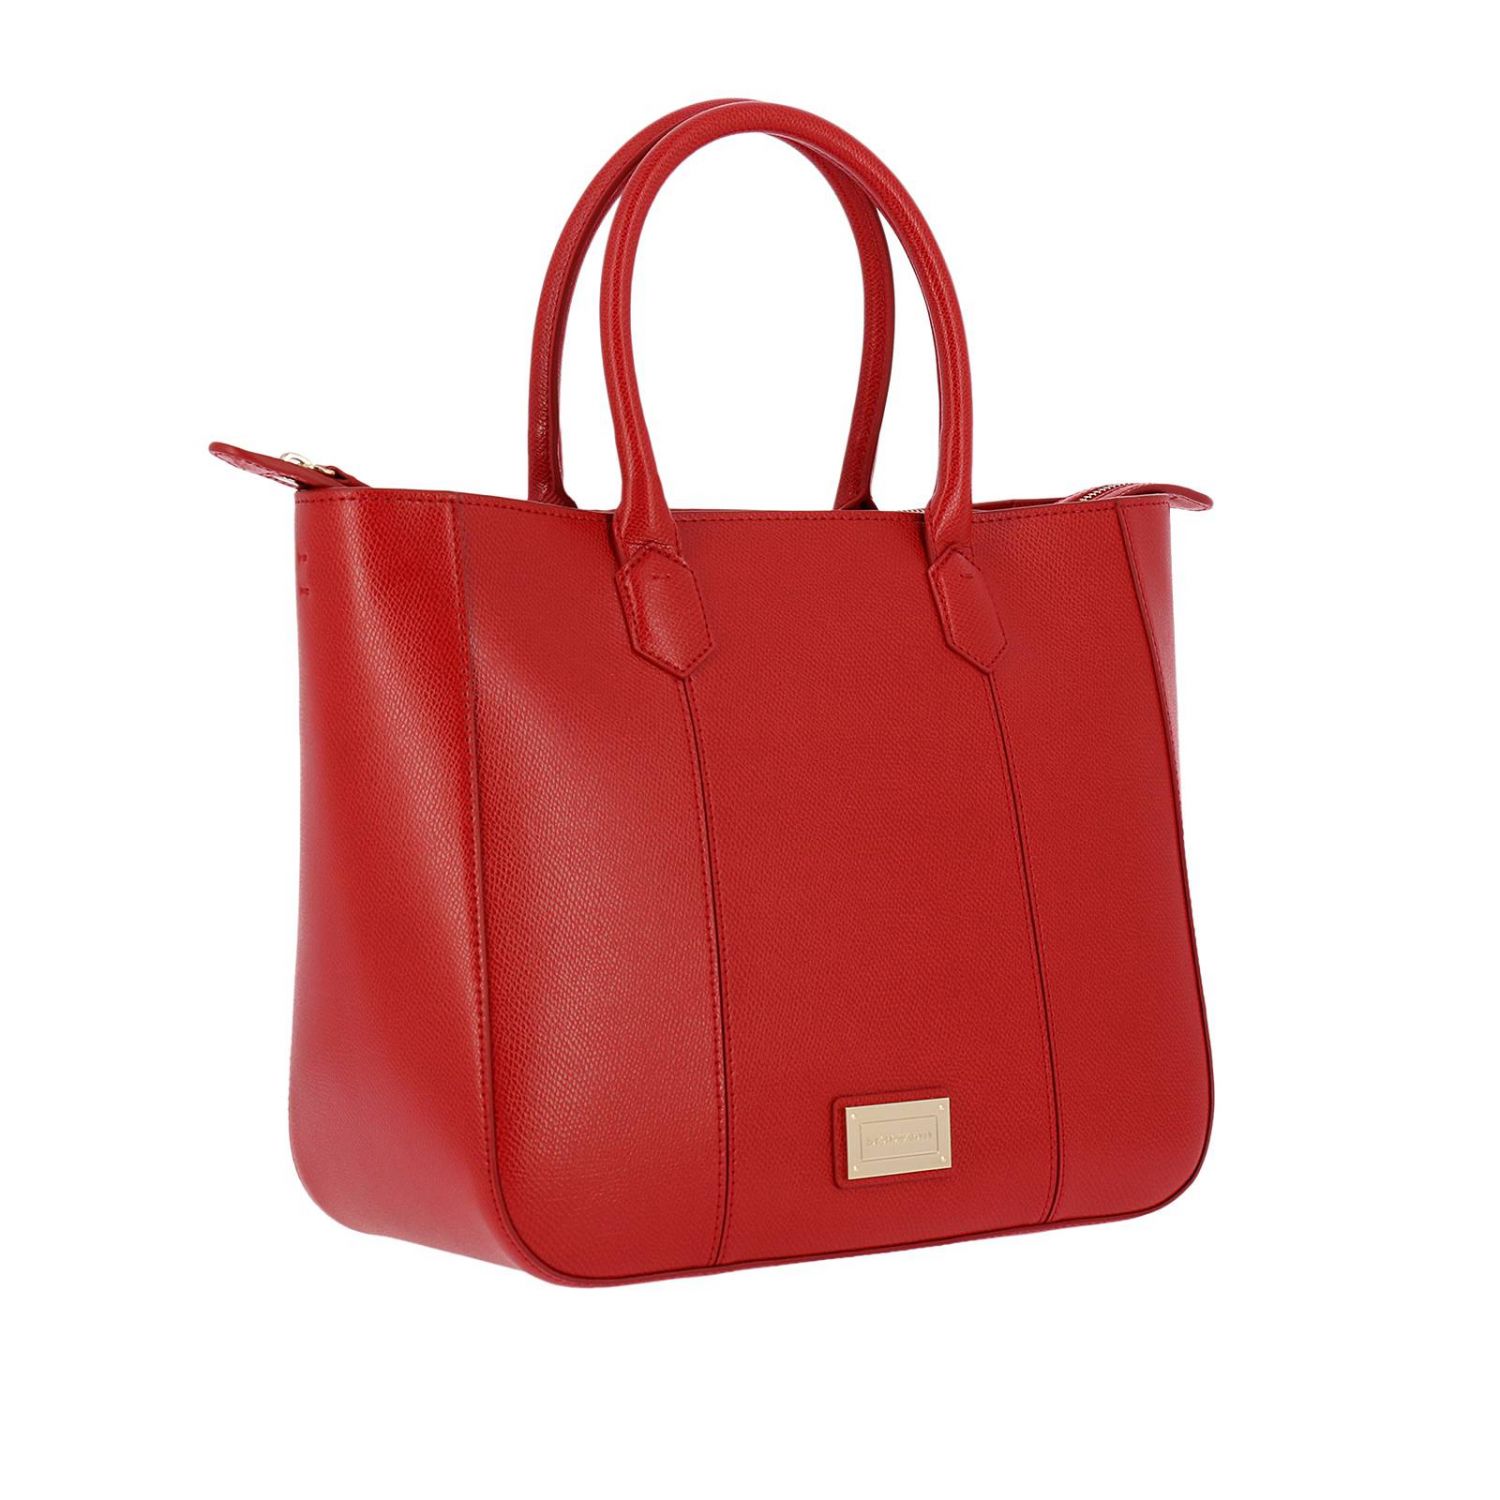 Emporio Armani Outlet: Crossbody bags women | Crossbody Bags Emporio ...